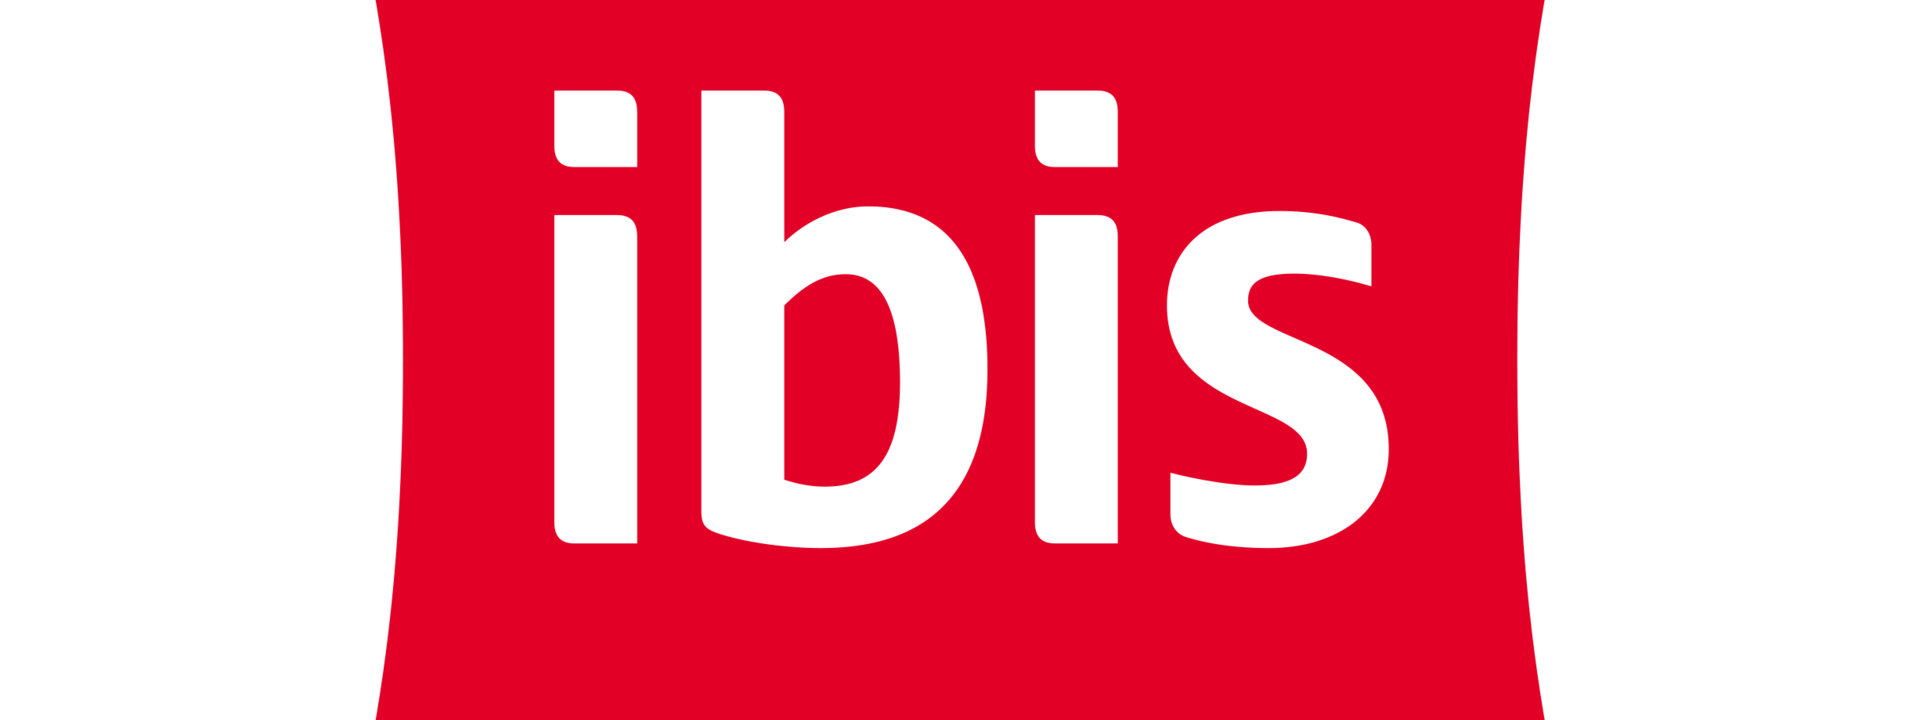 logo_ibis_rgb_2.png